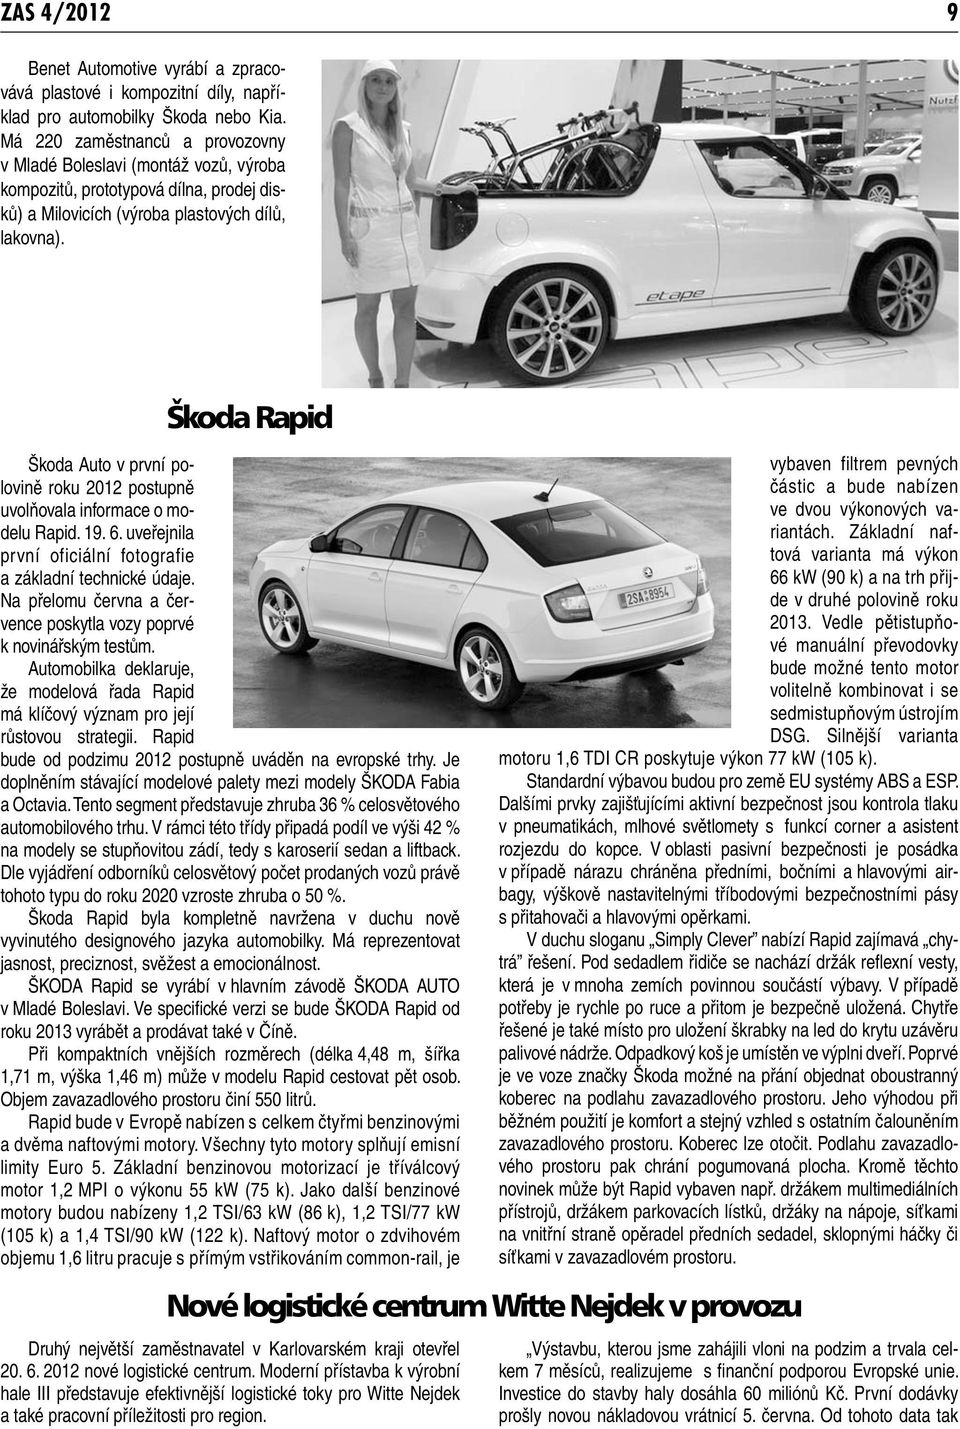 Škoda Rapid Škoda Auto v první polovině roku 2012 postupně uvolňovala informace o modelu Rapid. 19. 6. uveřejnila první oficiální fotografie a základní technické údaje.